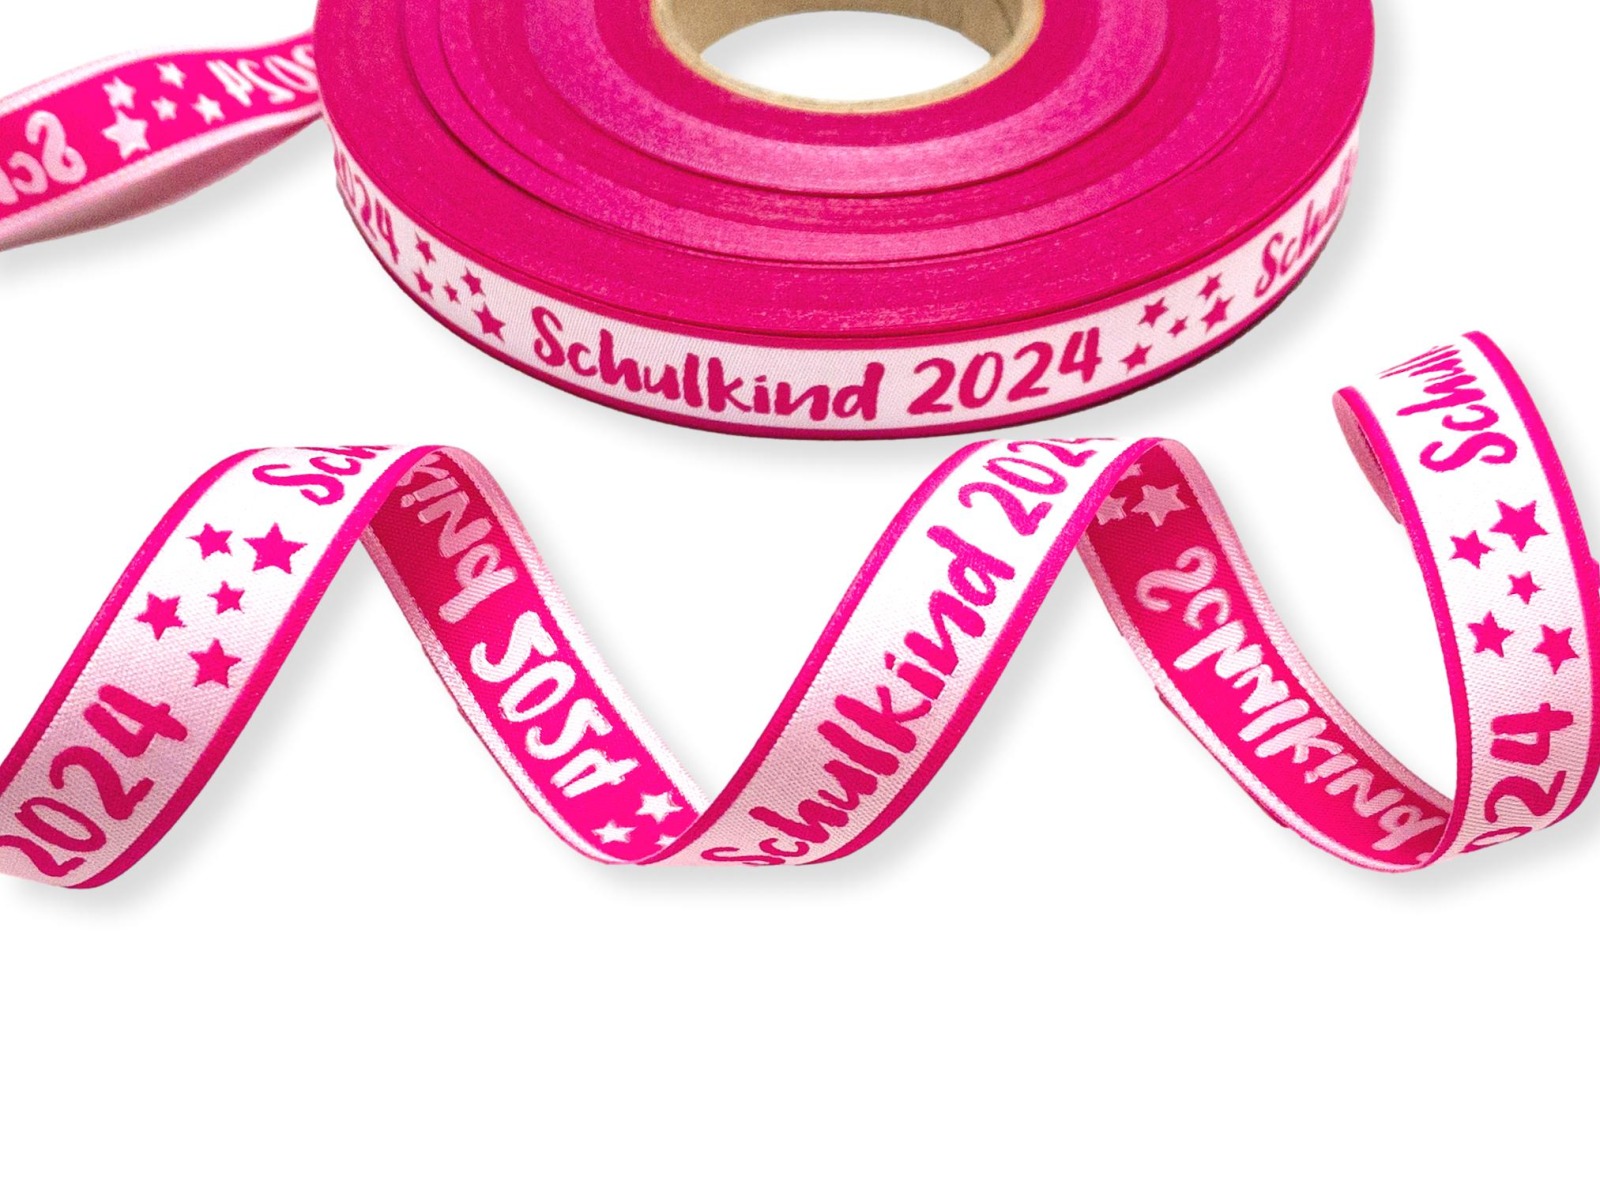 Webband Schulkind 2024 in pink